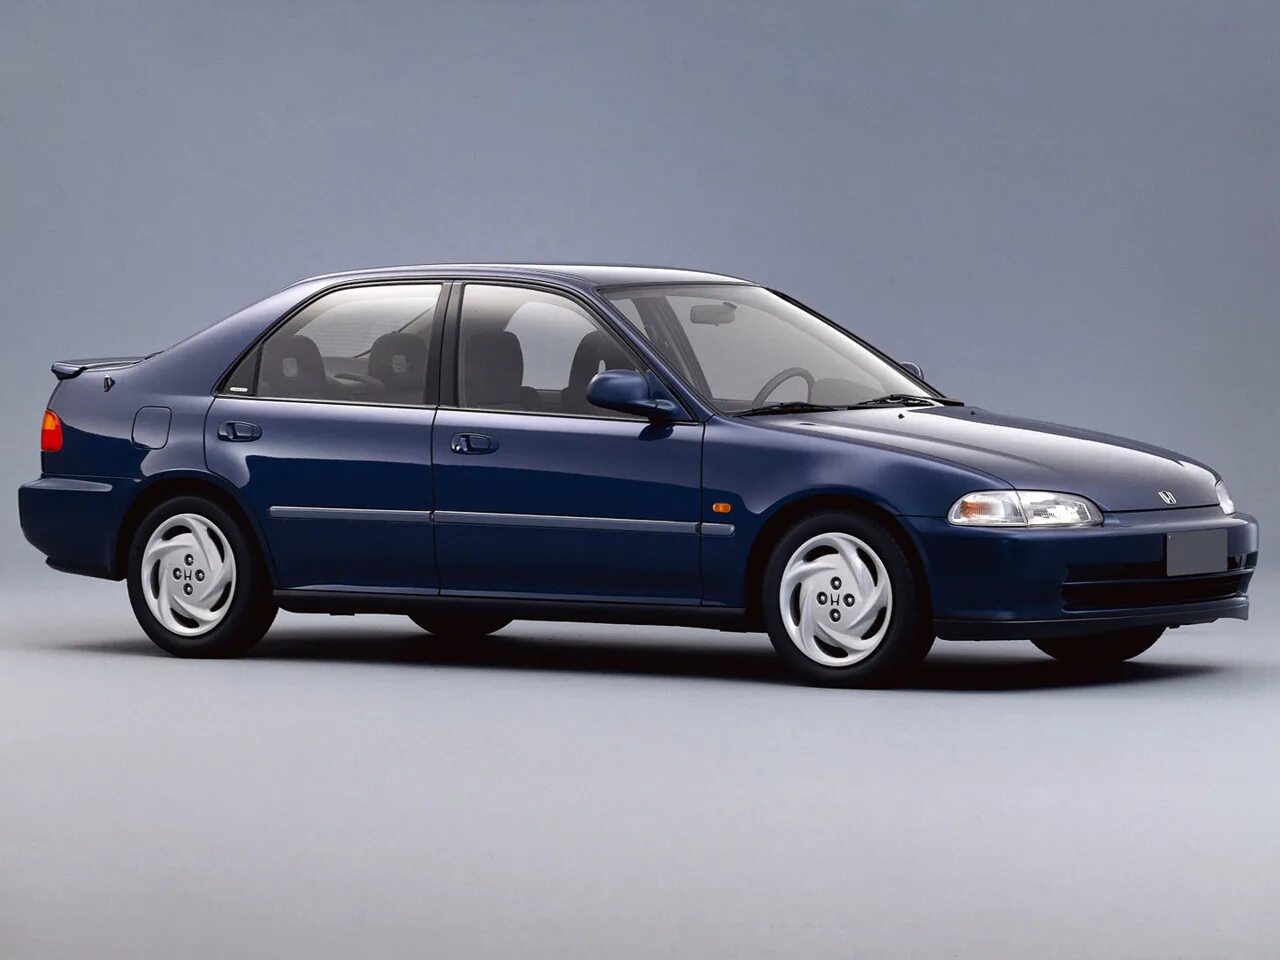 Цивик 5 поколение. Honda Civic 5 седан. Honda Civic 1995 EG. Honda Civic 5 поколение седан. Honda Civic Ferio 5 поколение.